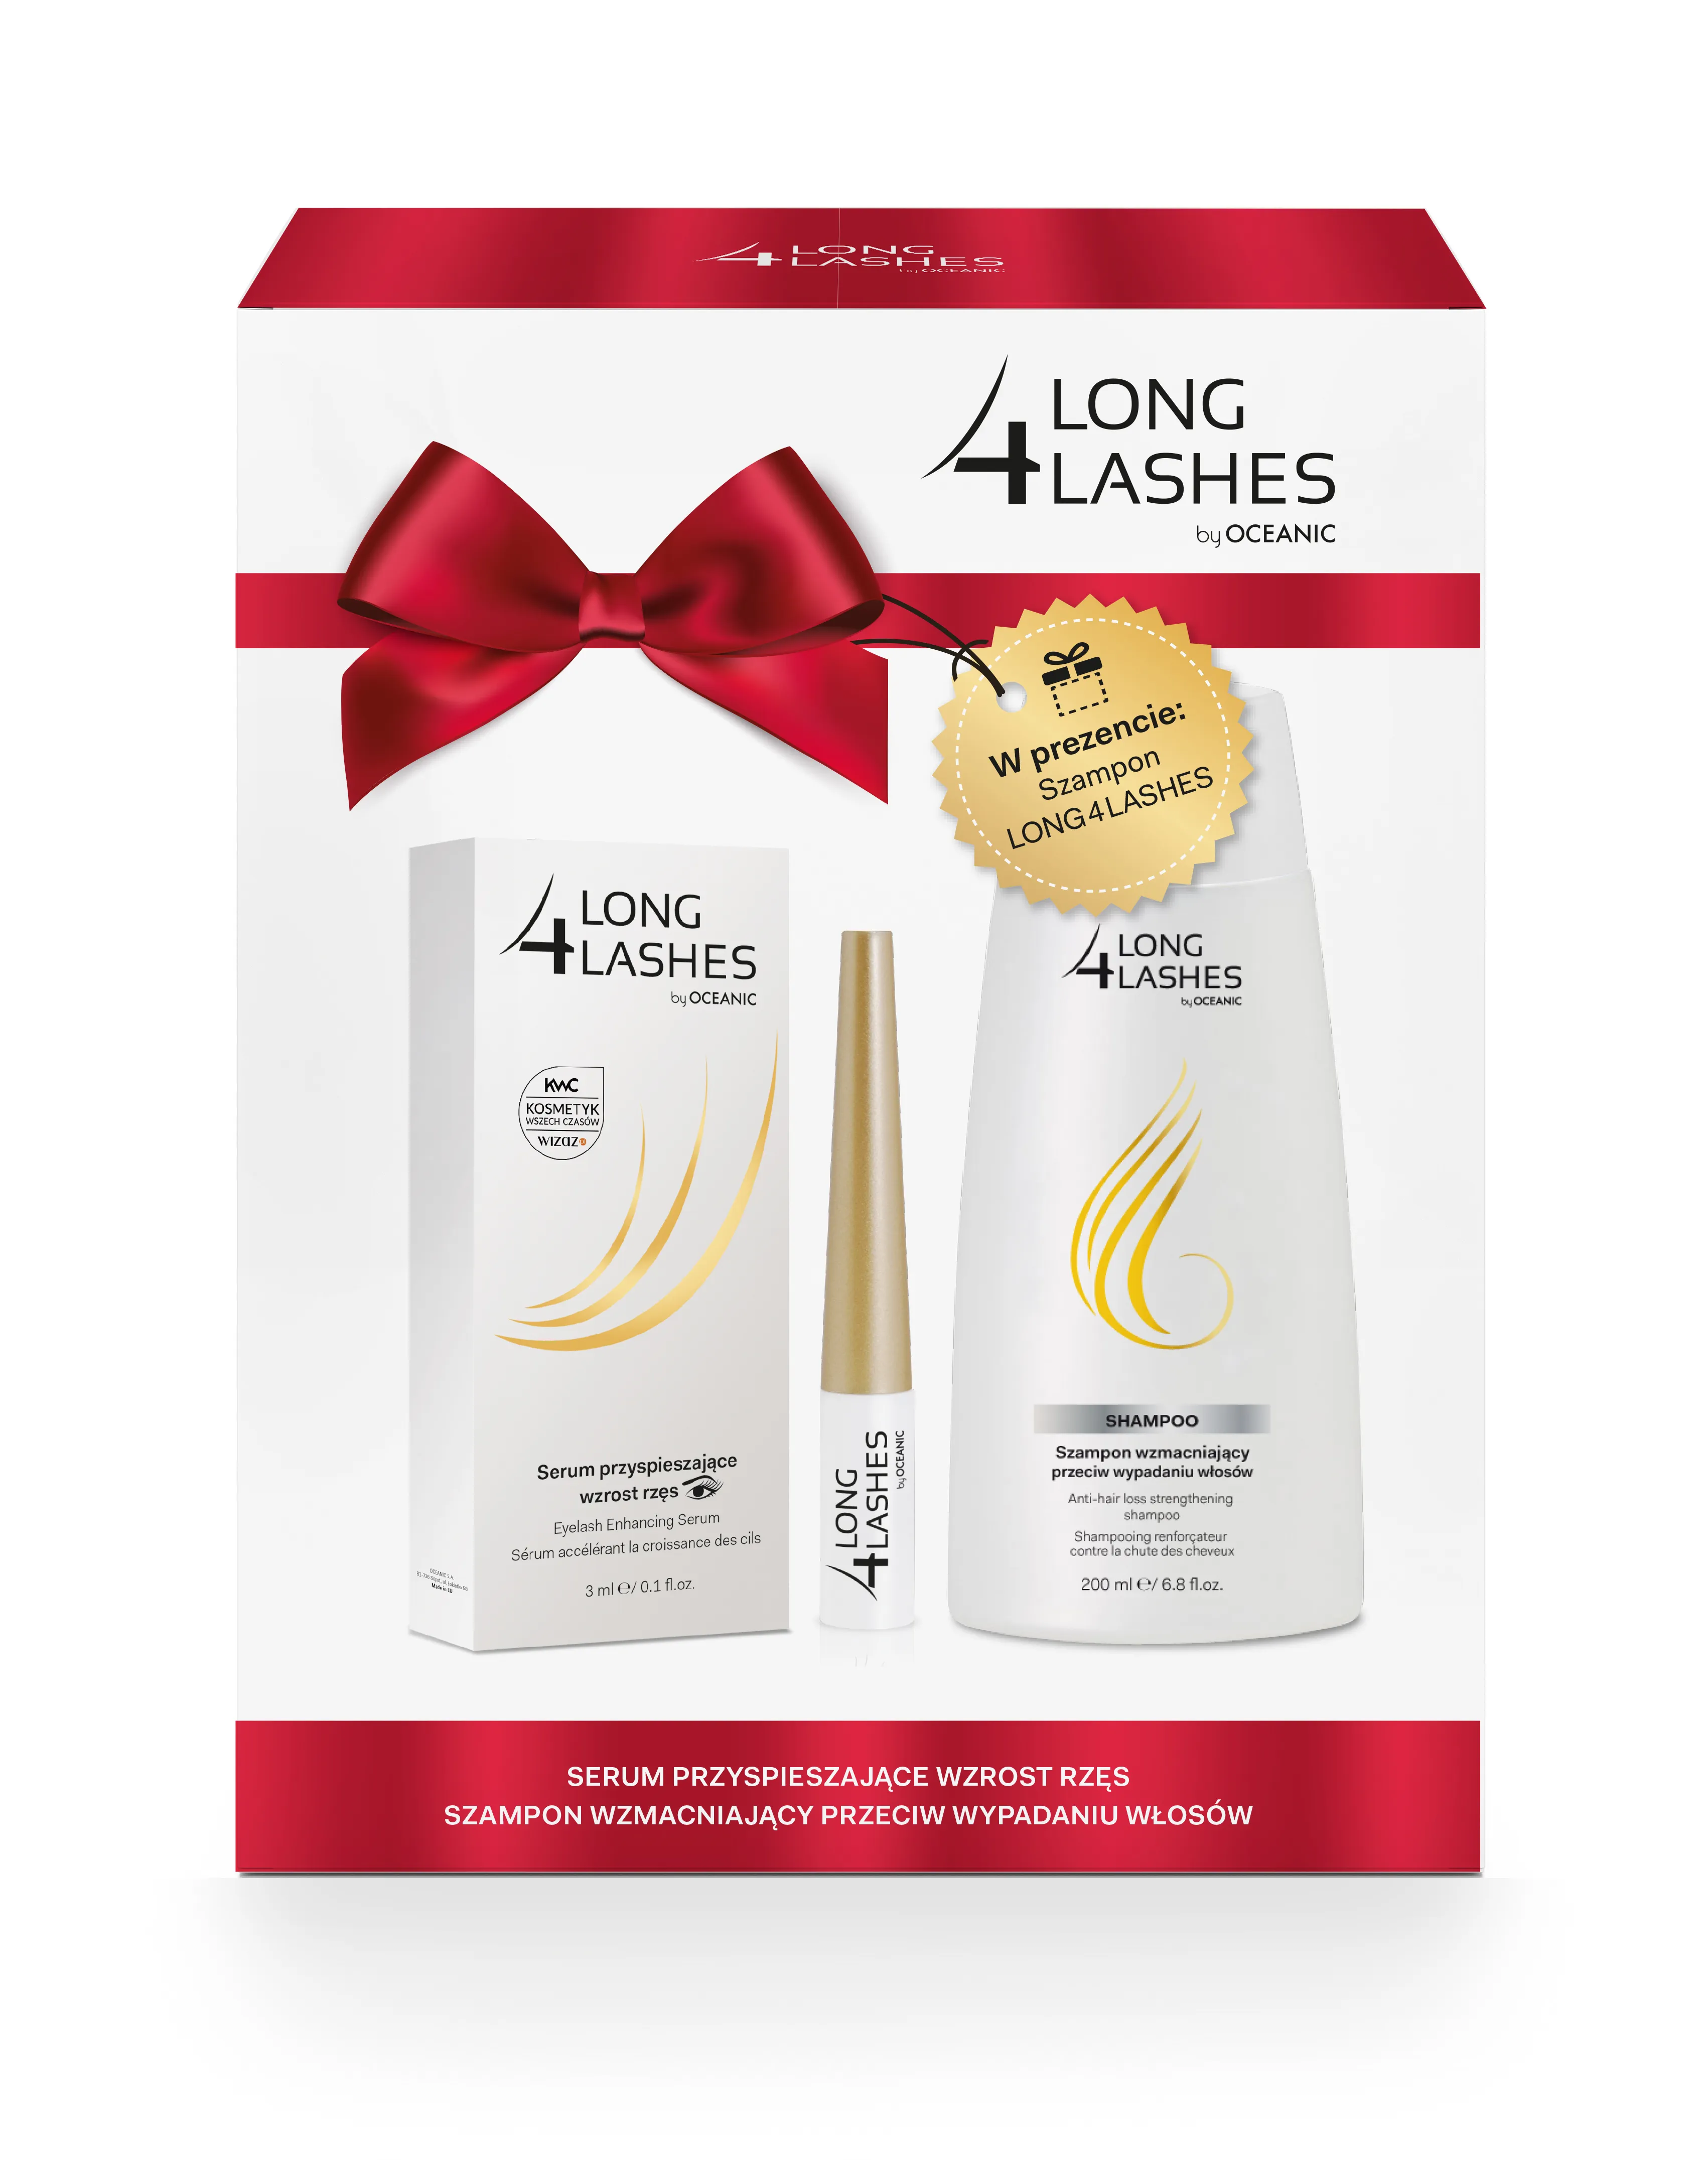 Long 4 Lashes zestaw, serum przyspieszające wzrost rzęs, 3 ml + szampon wzmacniający przeciw wypadaniu włosów, 200 ml